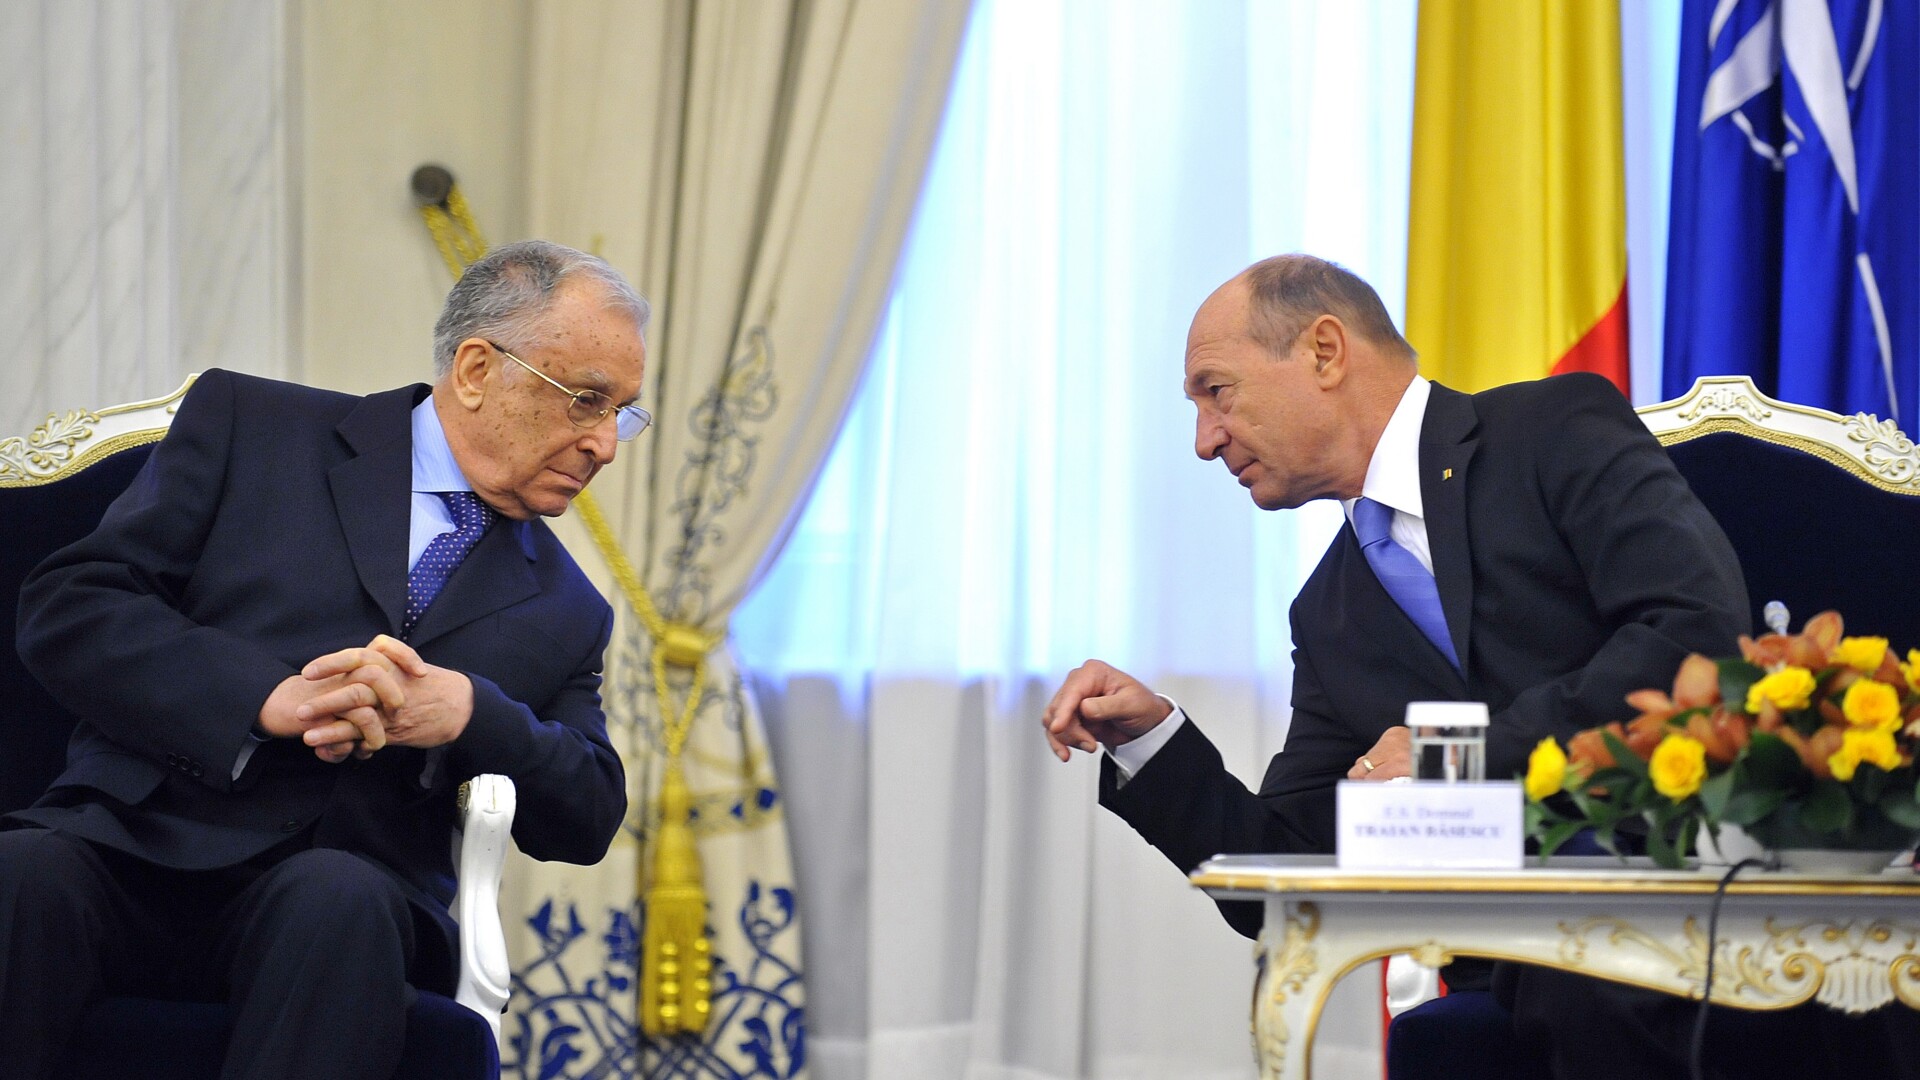 Ion Iliescu, Traian Basescu